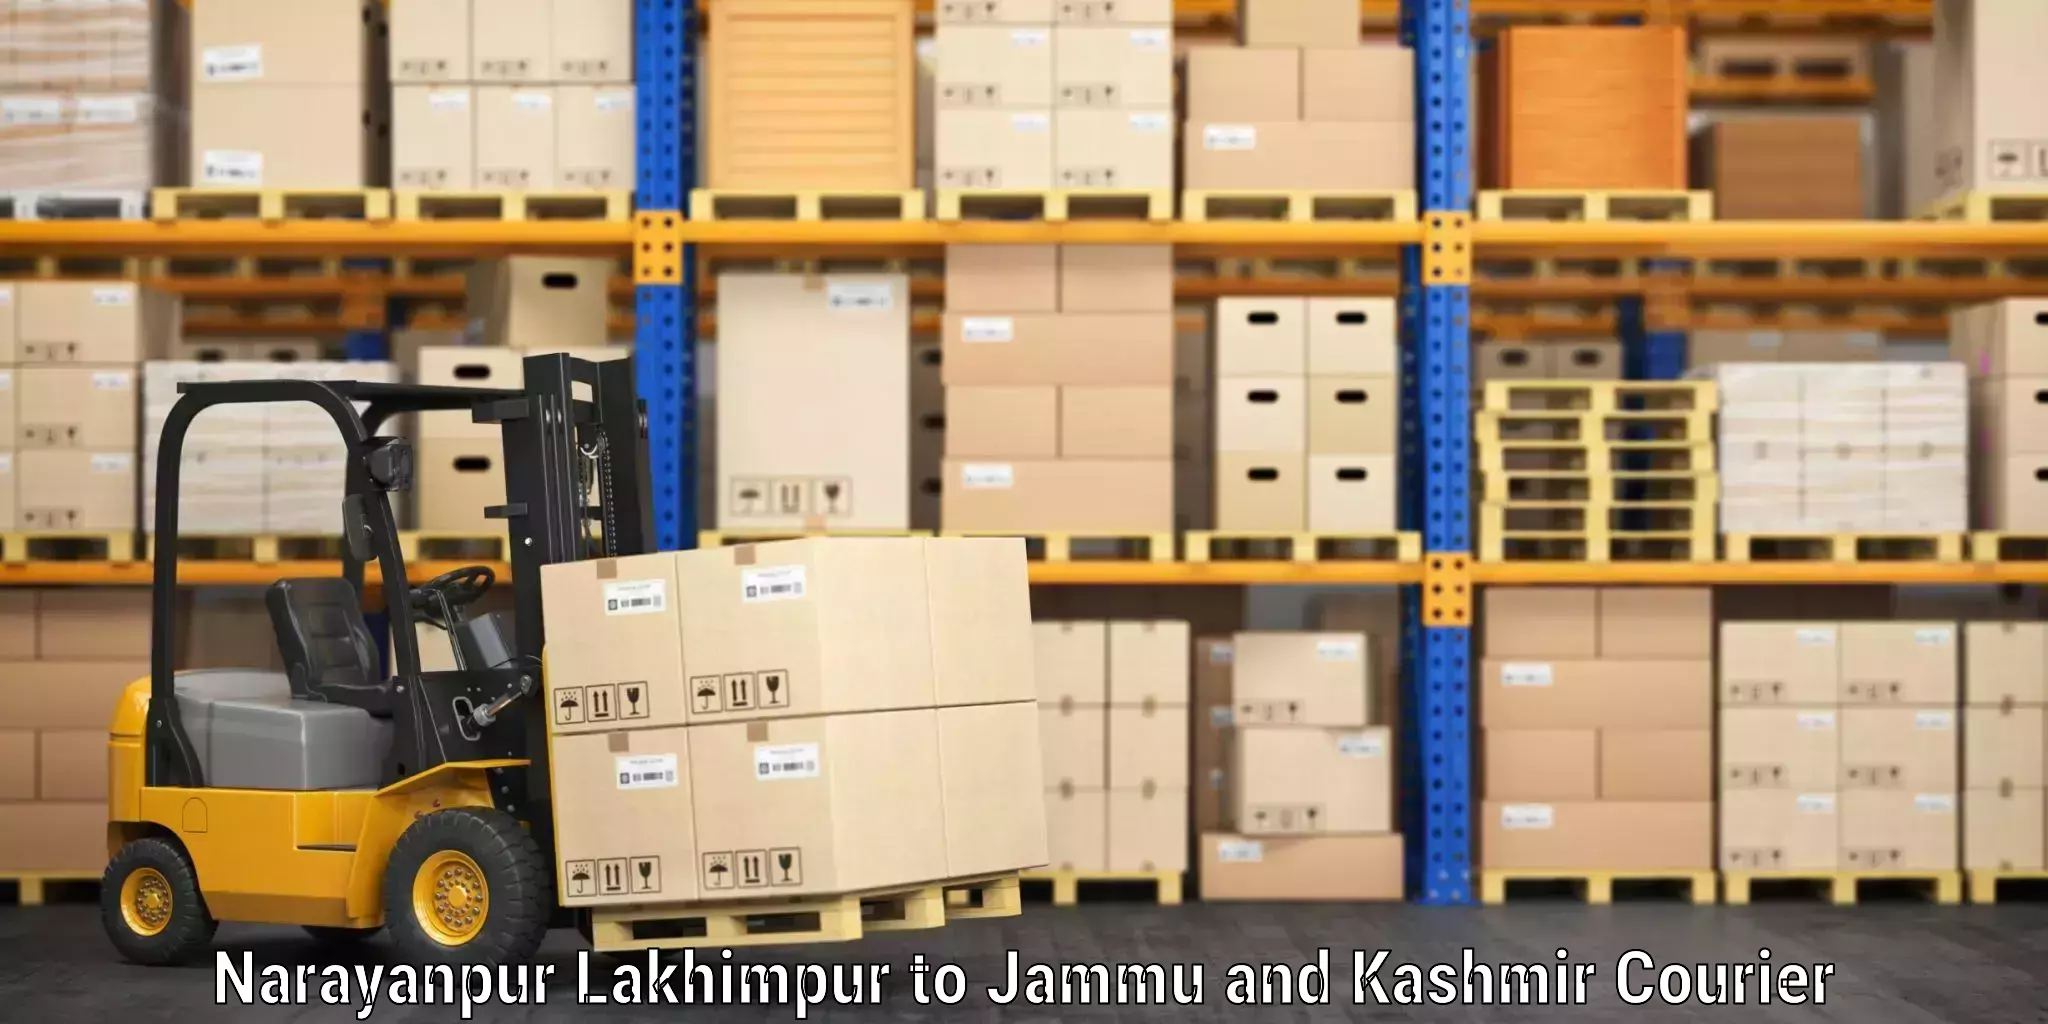 Luggage shipping planner Narayanpur Lakhimpur to Kargil